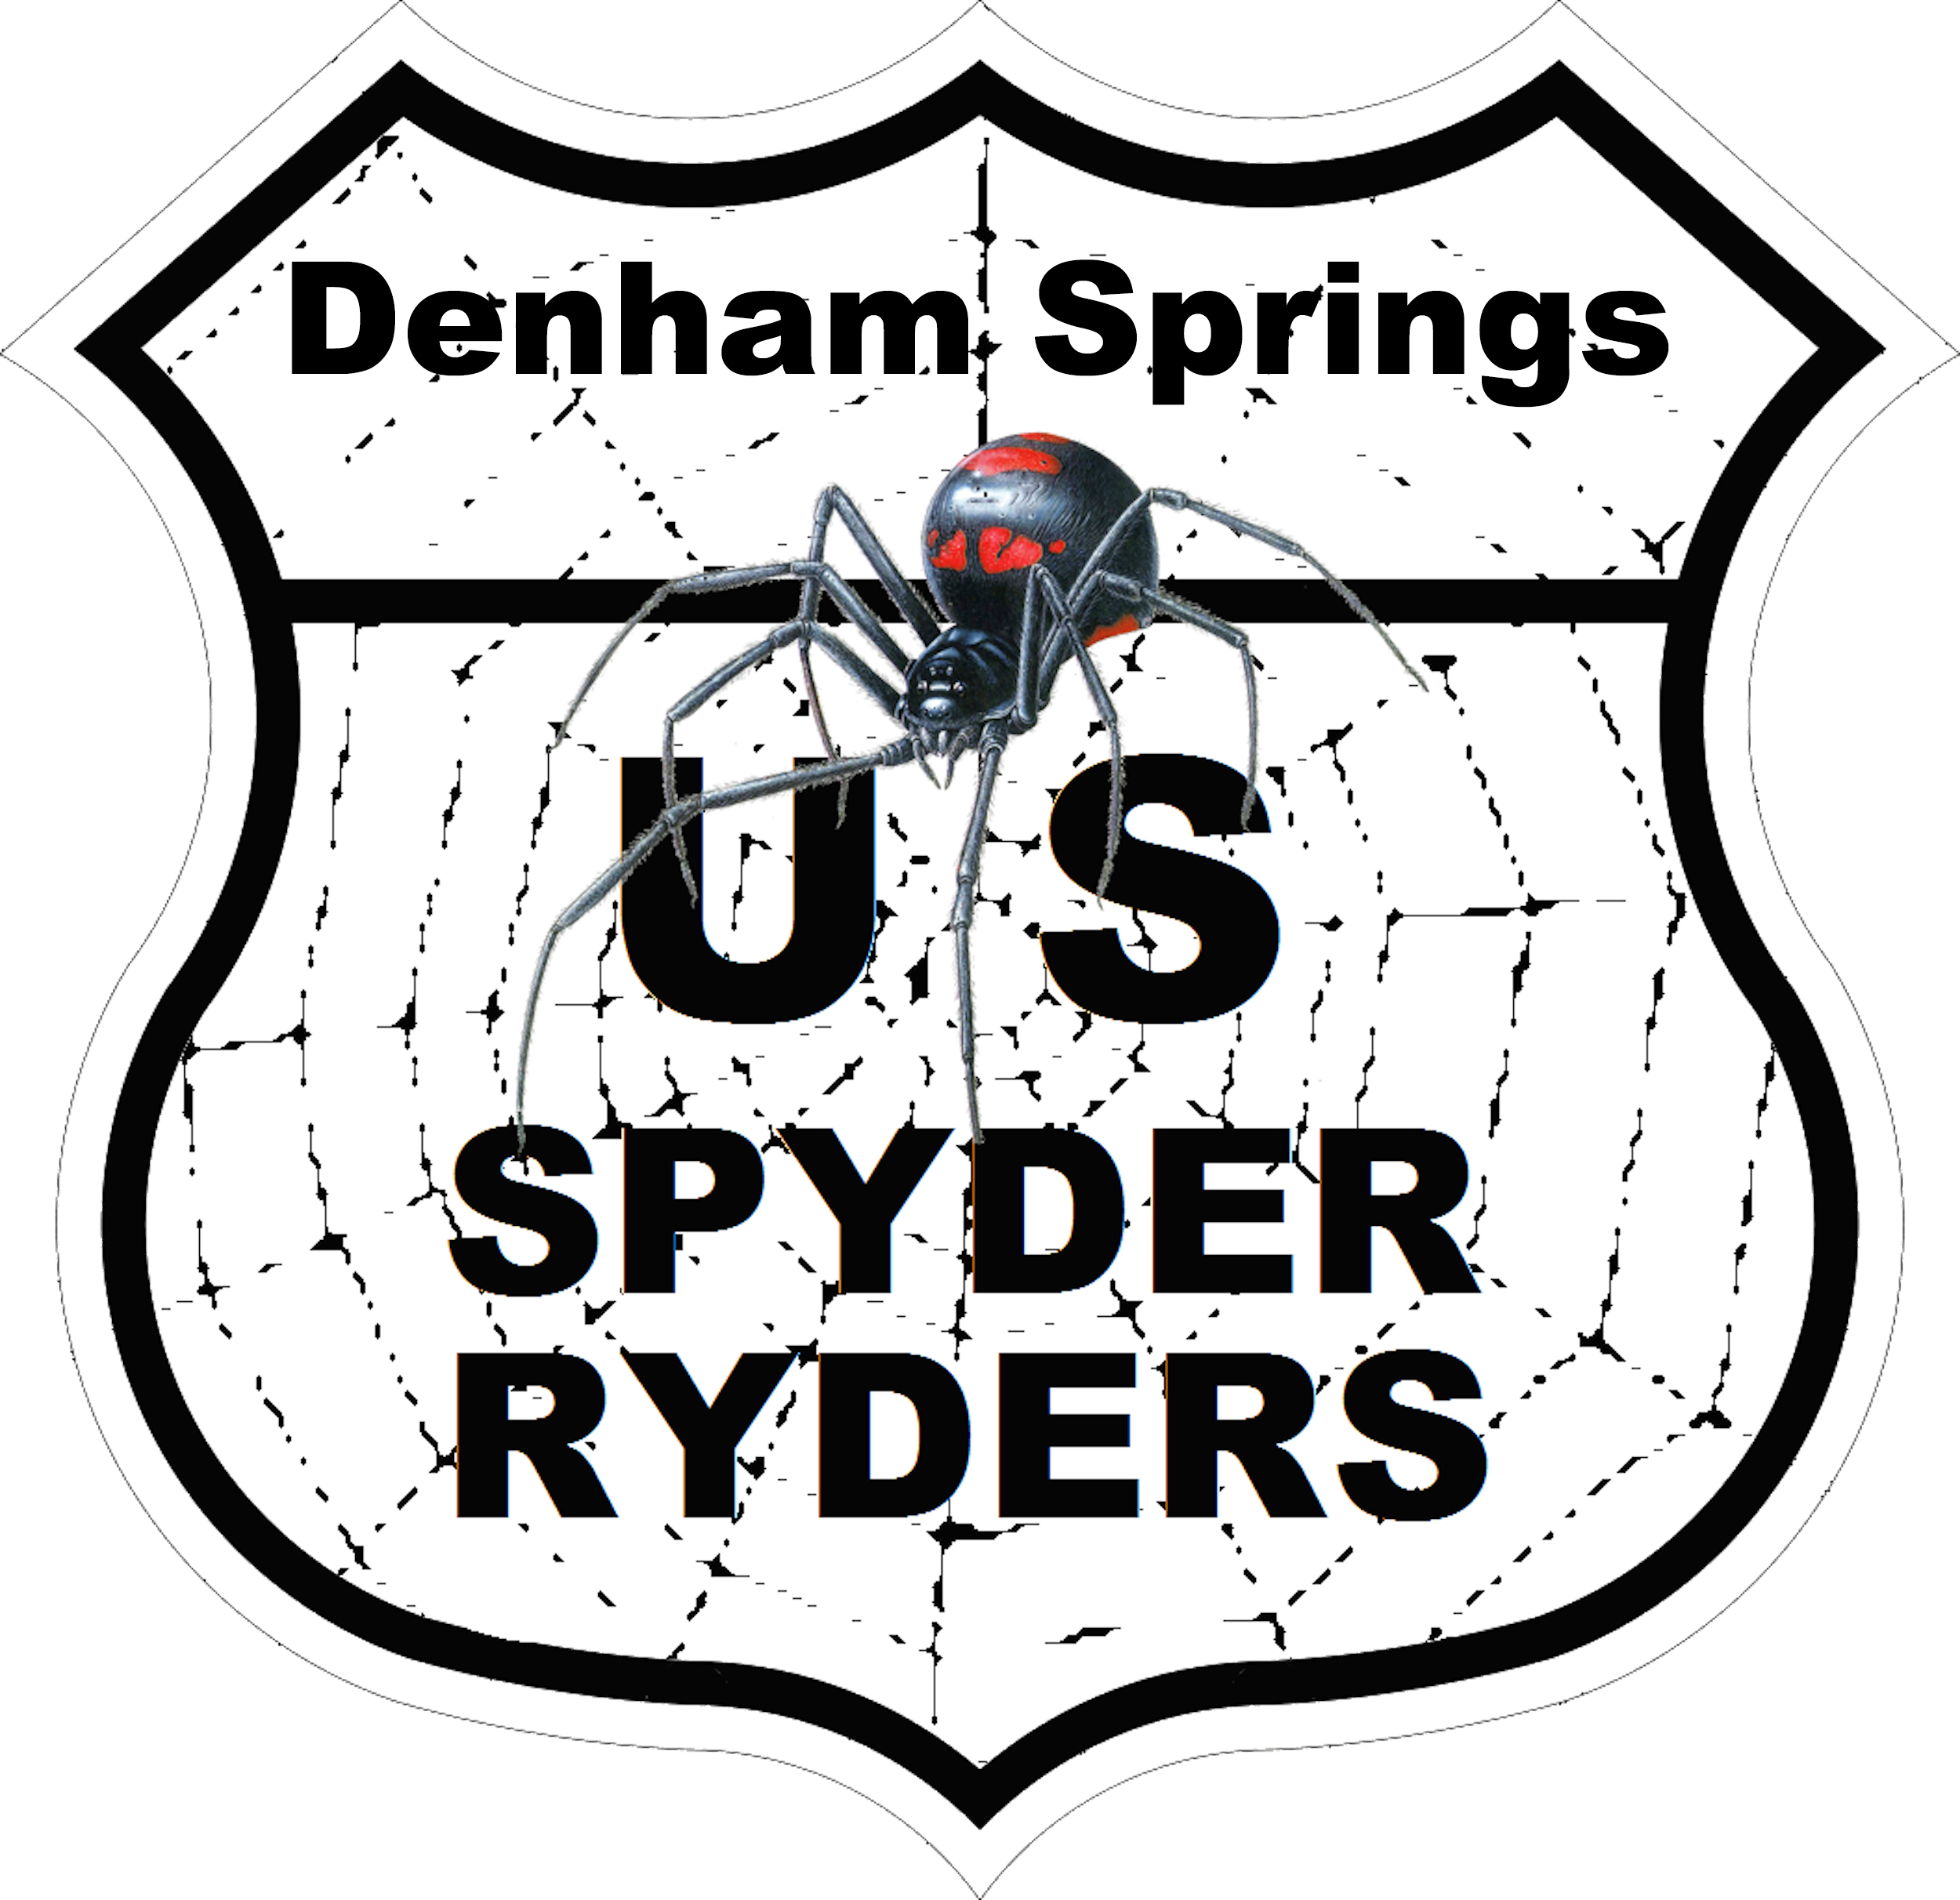 US_Spyder_Ryder_LA_Denham_Springs.png